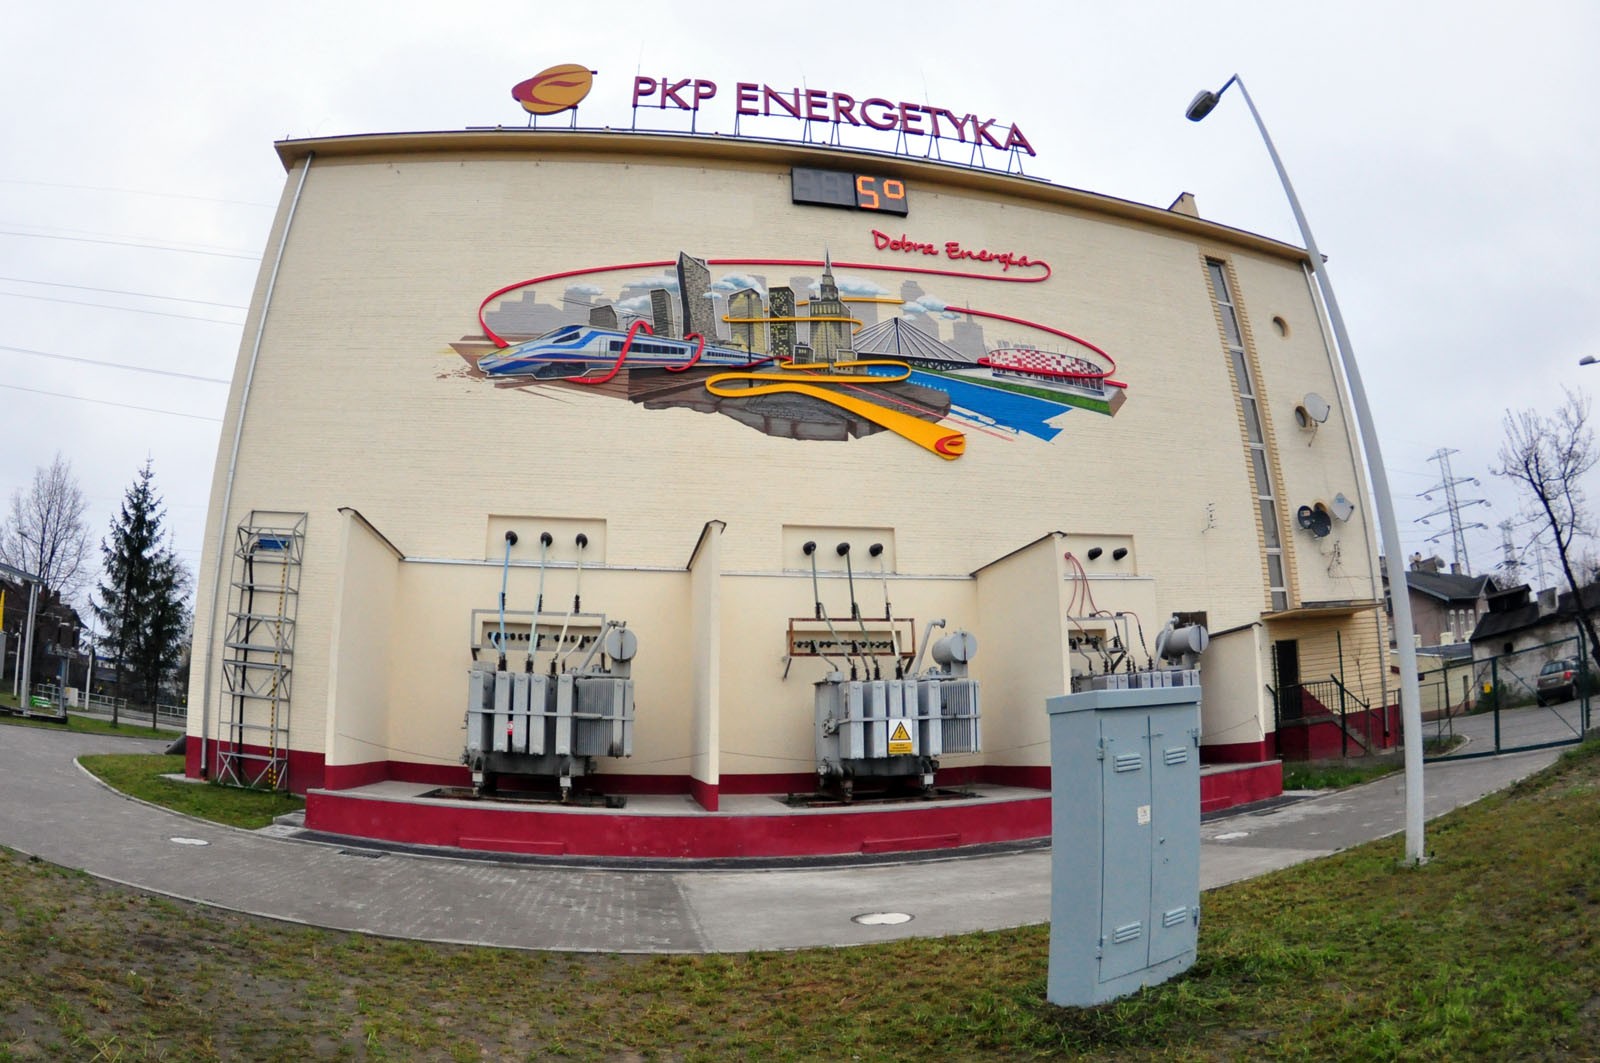 PKP Energetyka S.A. Dobra Energia mural w Warszawie | Mural z neonami PKP Energetyka w Warszawie | Portfolio